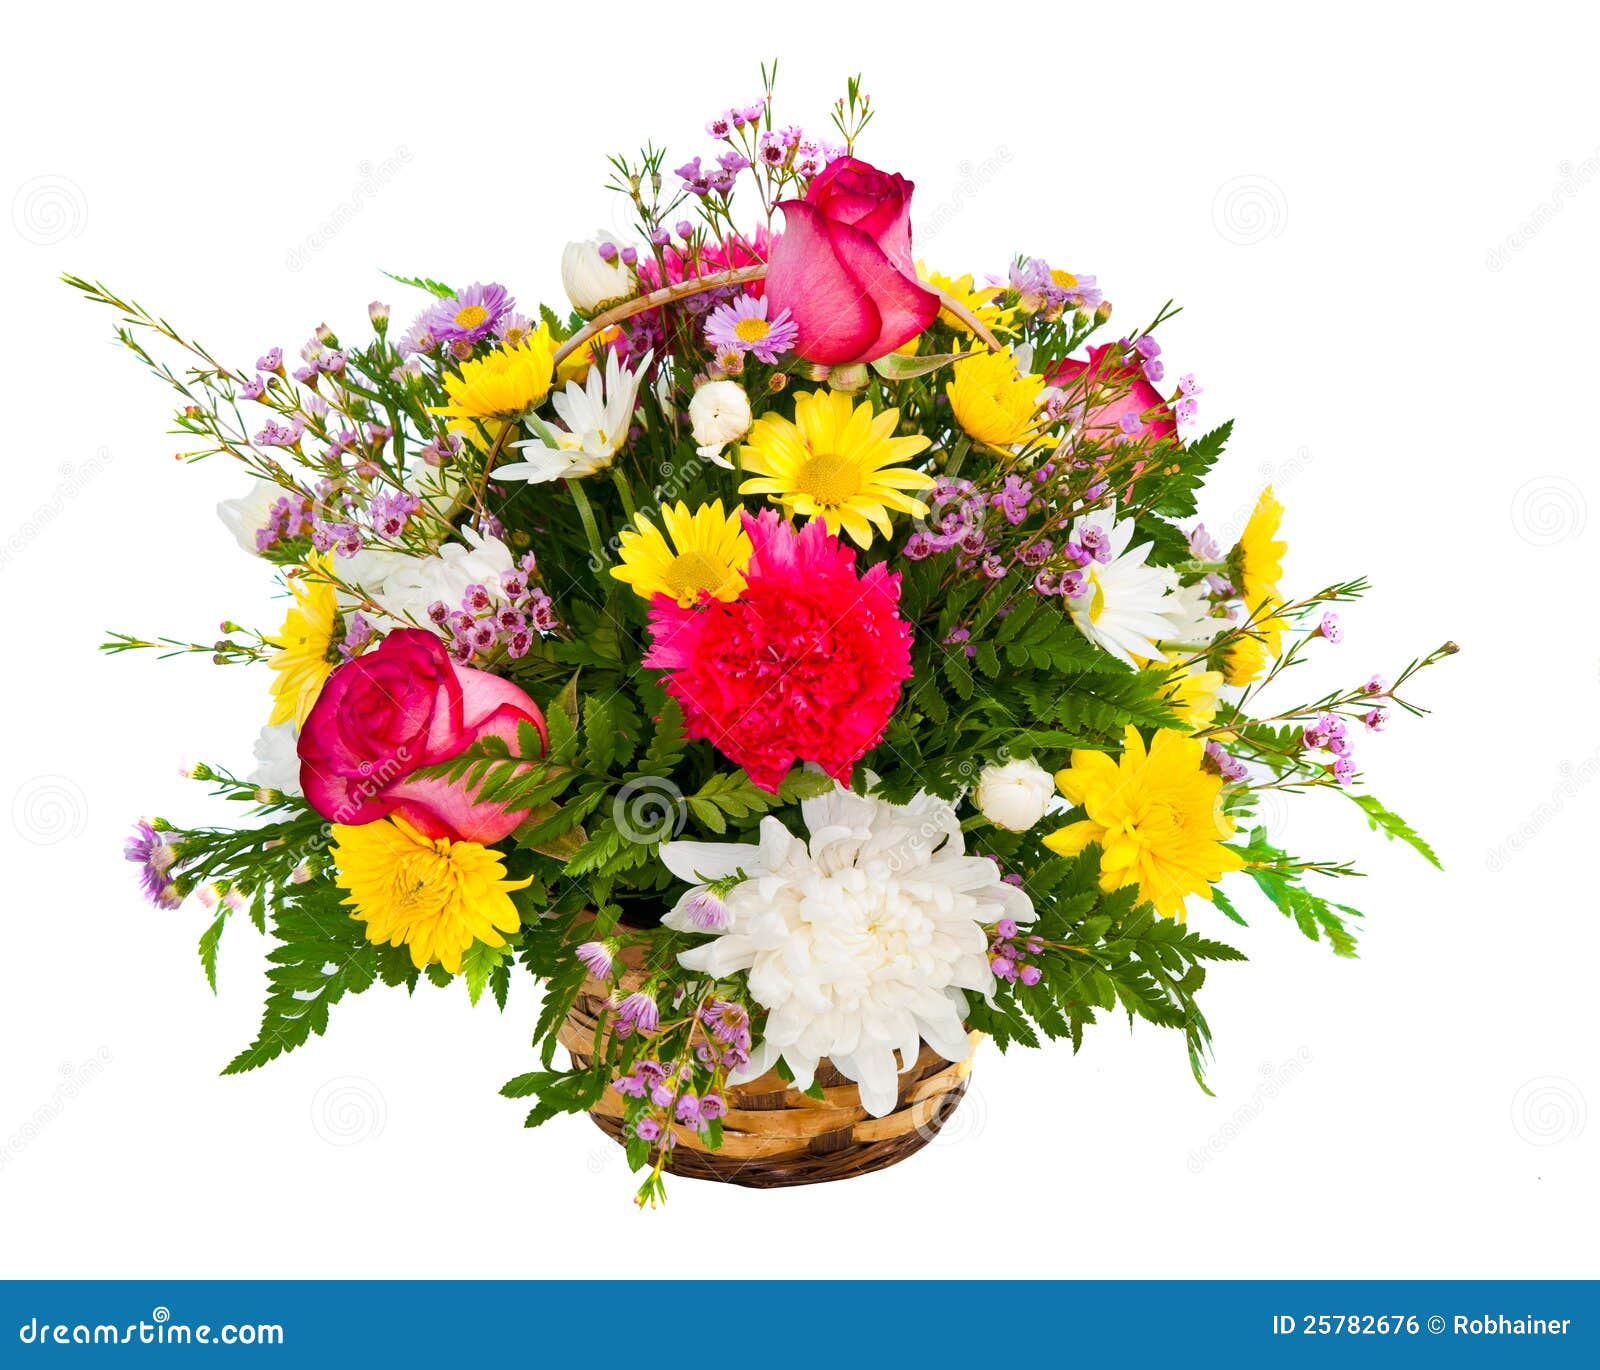 clipart flower arrangements - photo #37